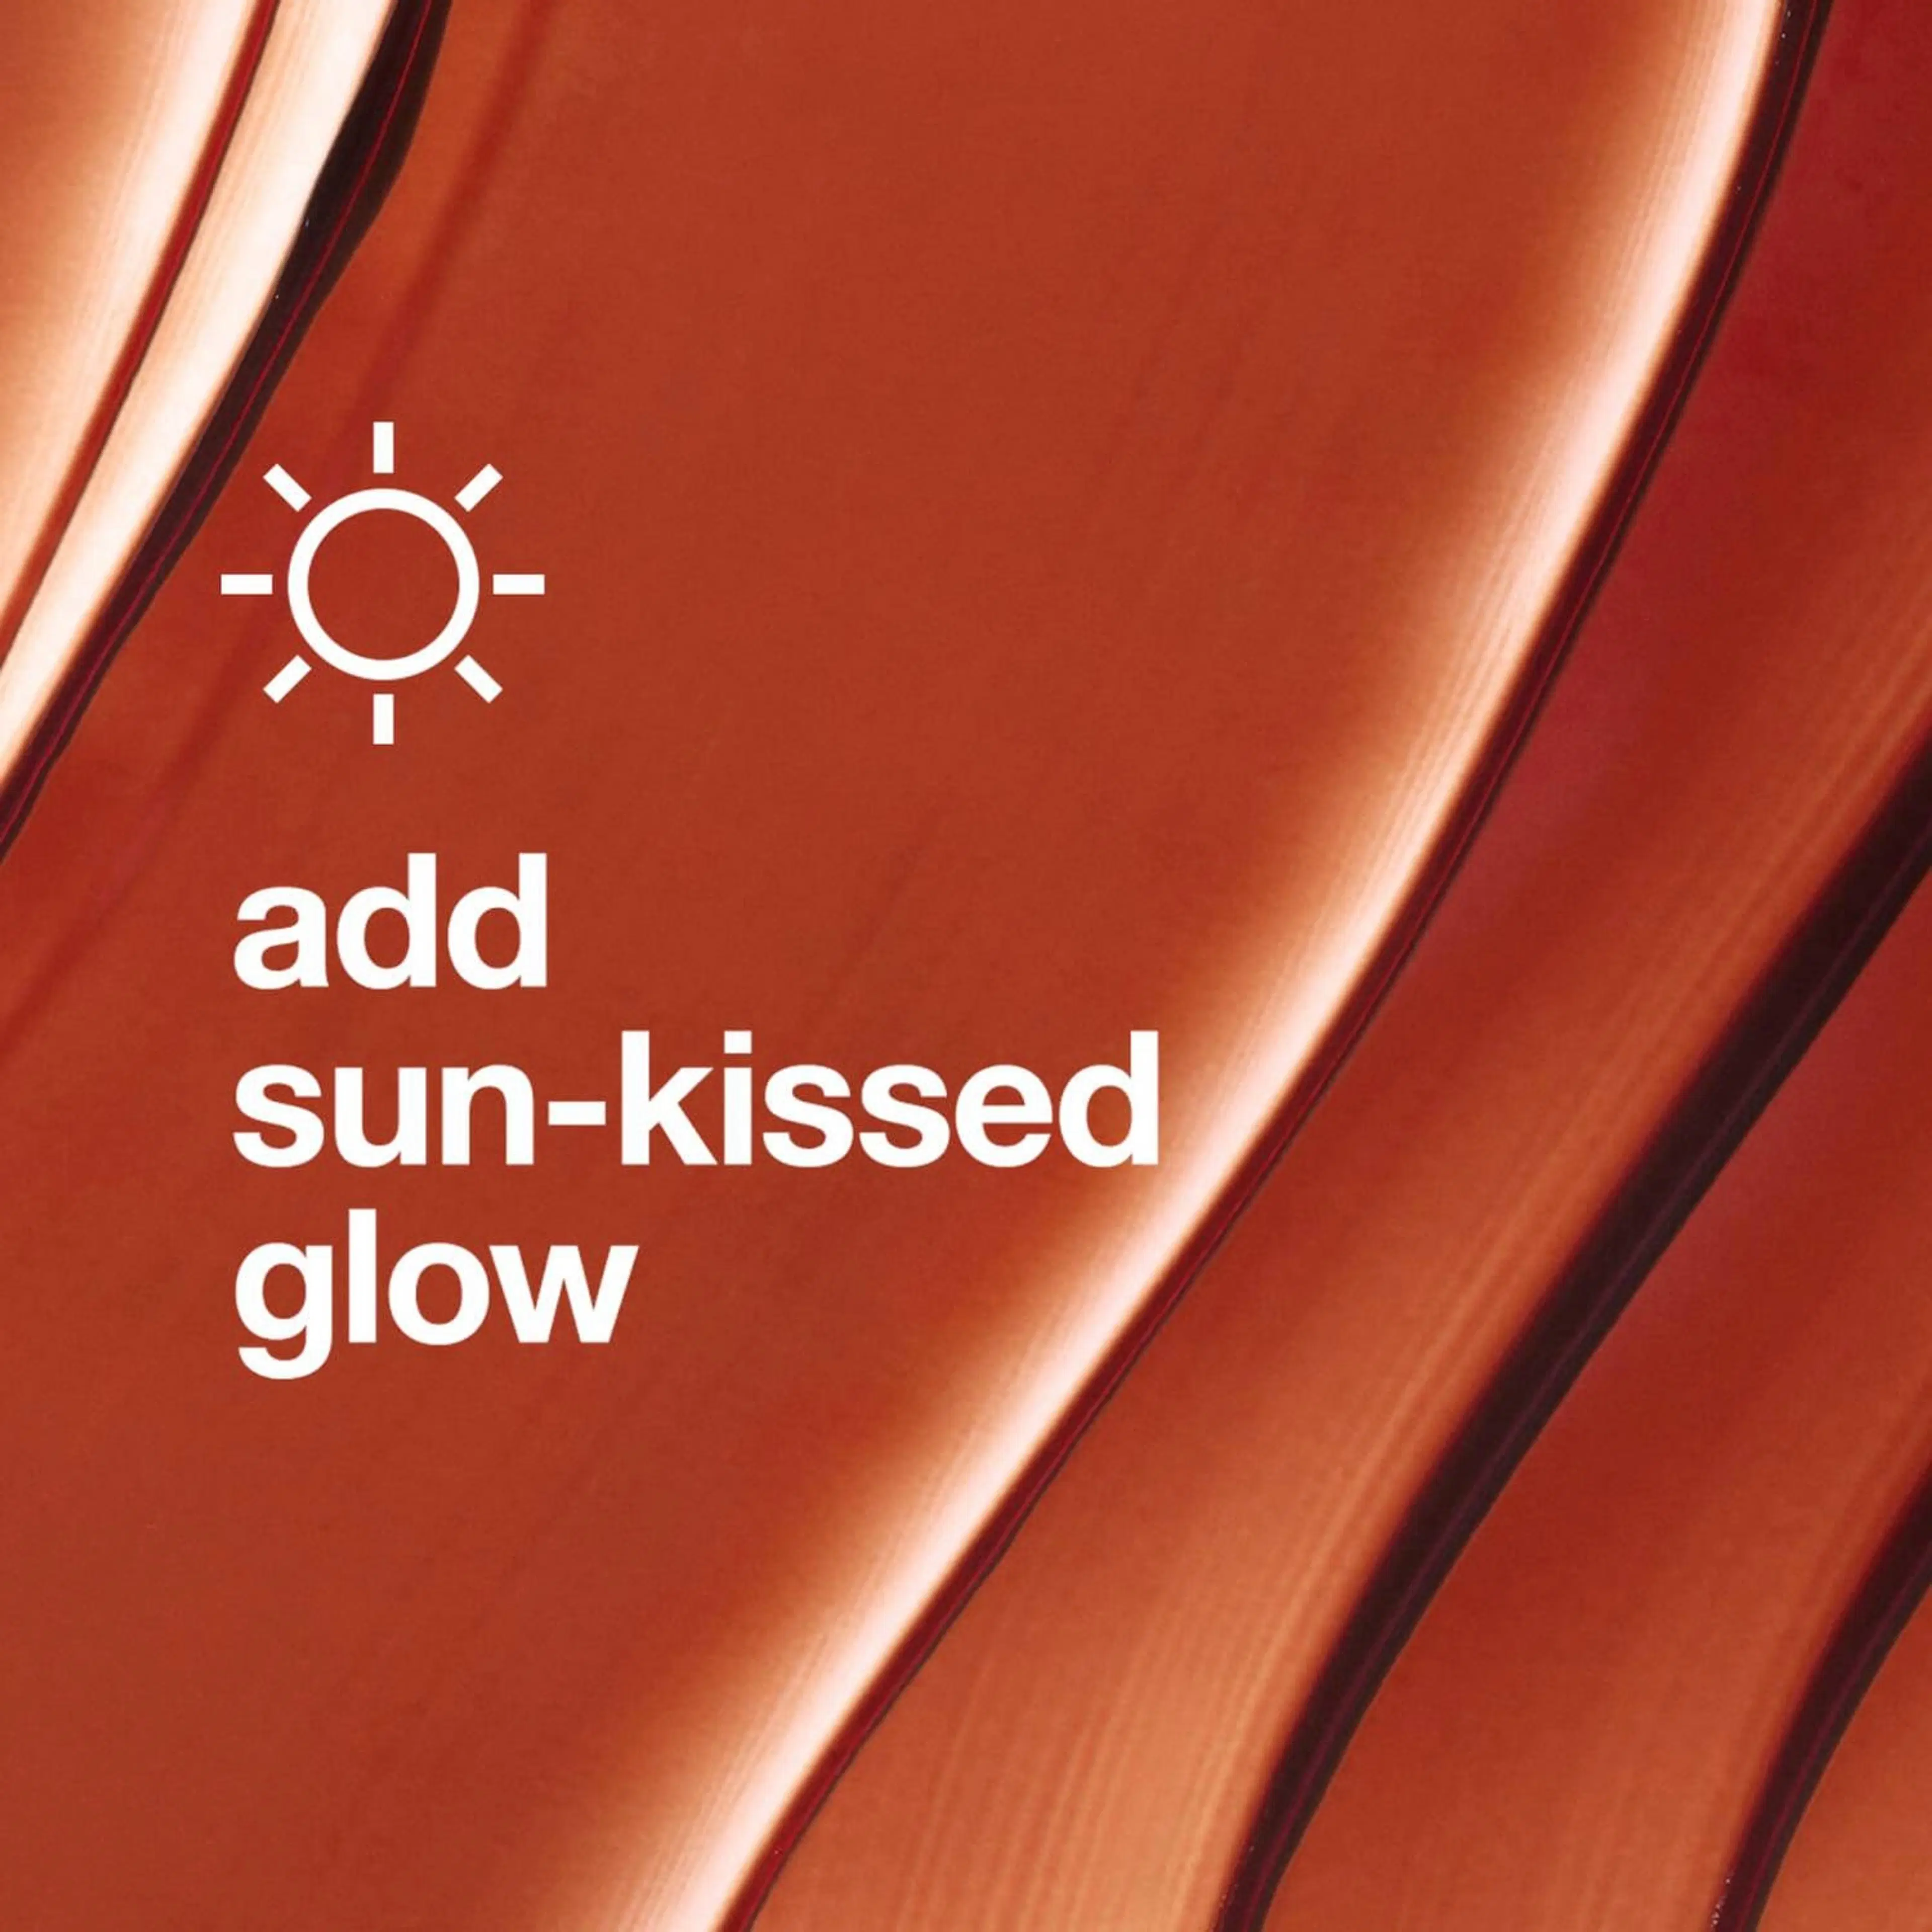 Clinique Sun Kissed Face-Gelee Complexion Multitasker sävyttävä kosteusgeeli 30 ml